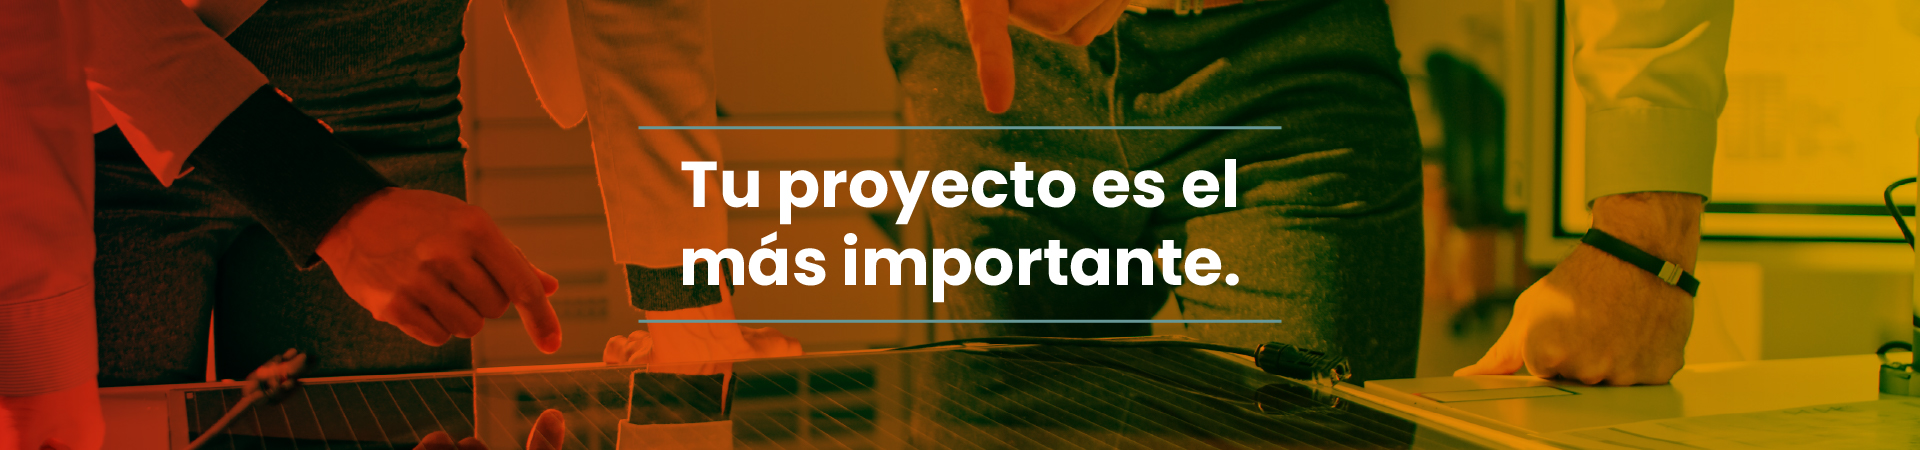 Tu proyecto es el más importante.